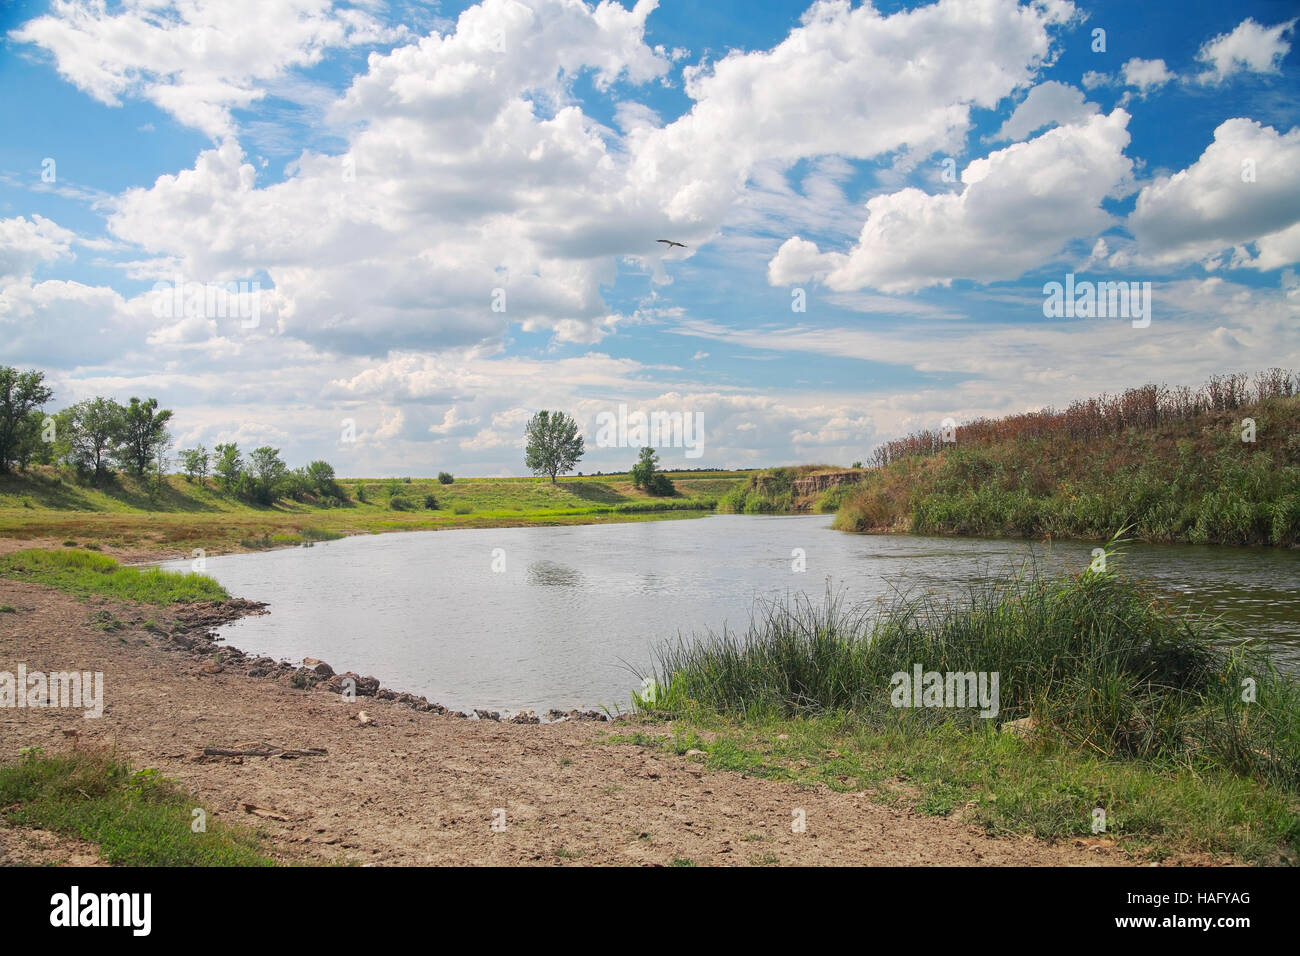 Paesaggio di campagna, river coast contro il cielo con le nuvole Foto Stock